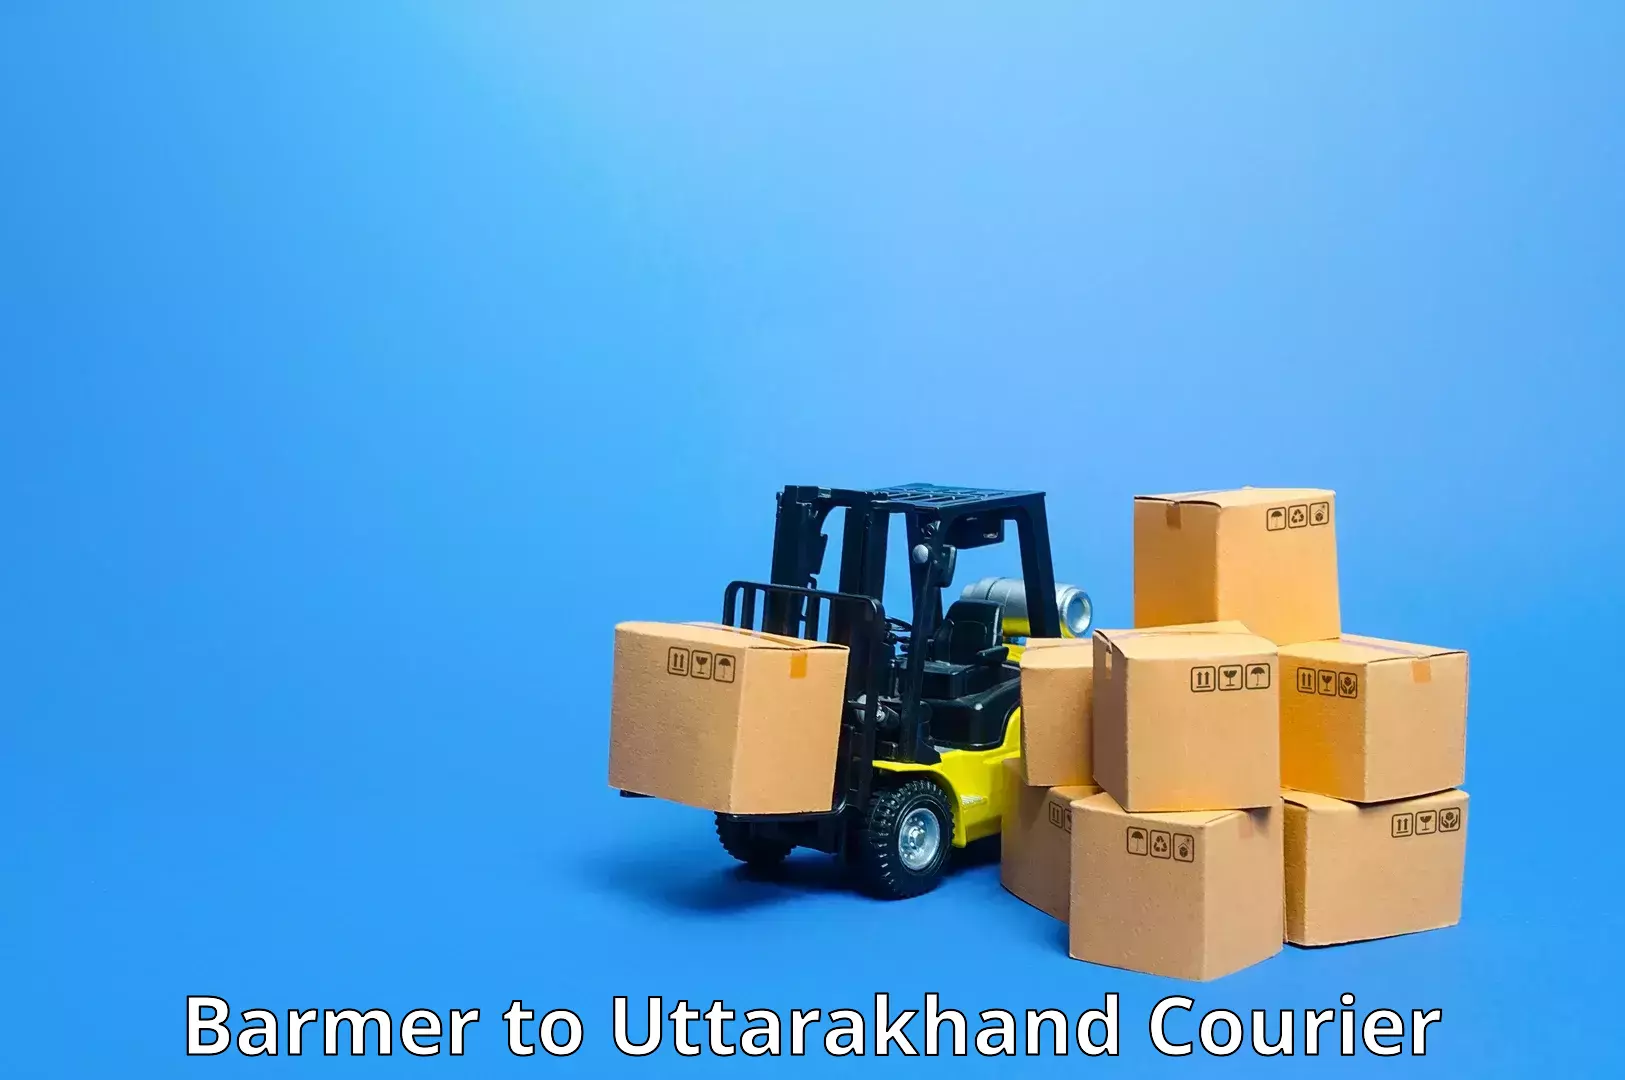 Comprehensive logistics Barmer to Tehri Garhwal